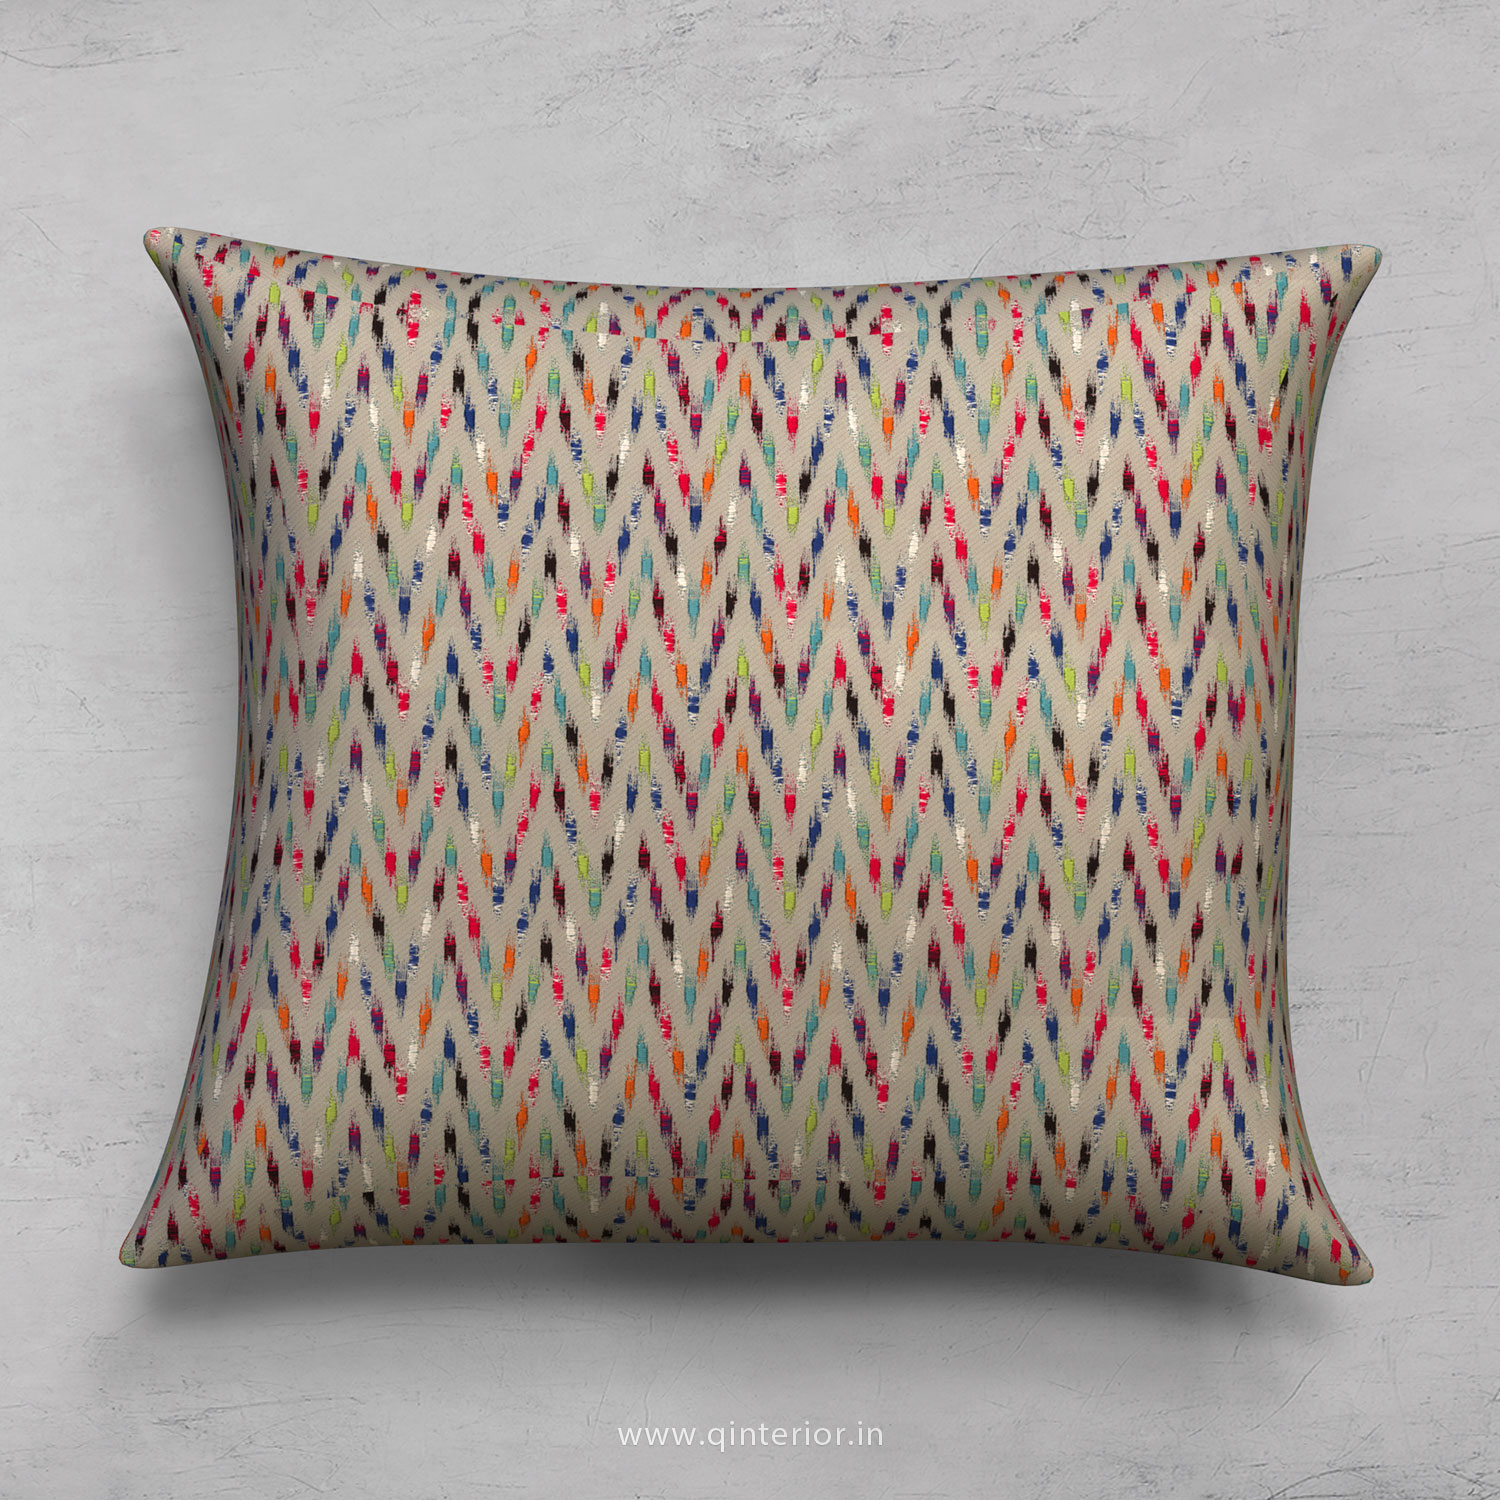 Cushion With Cushion Cover in Bargello - CUS001 BG10